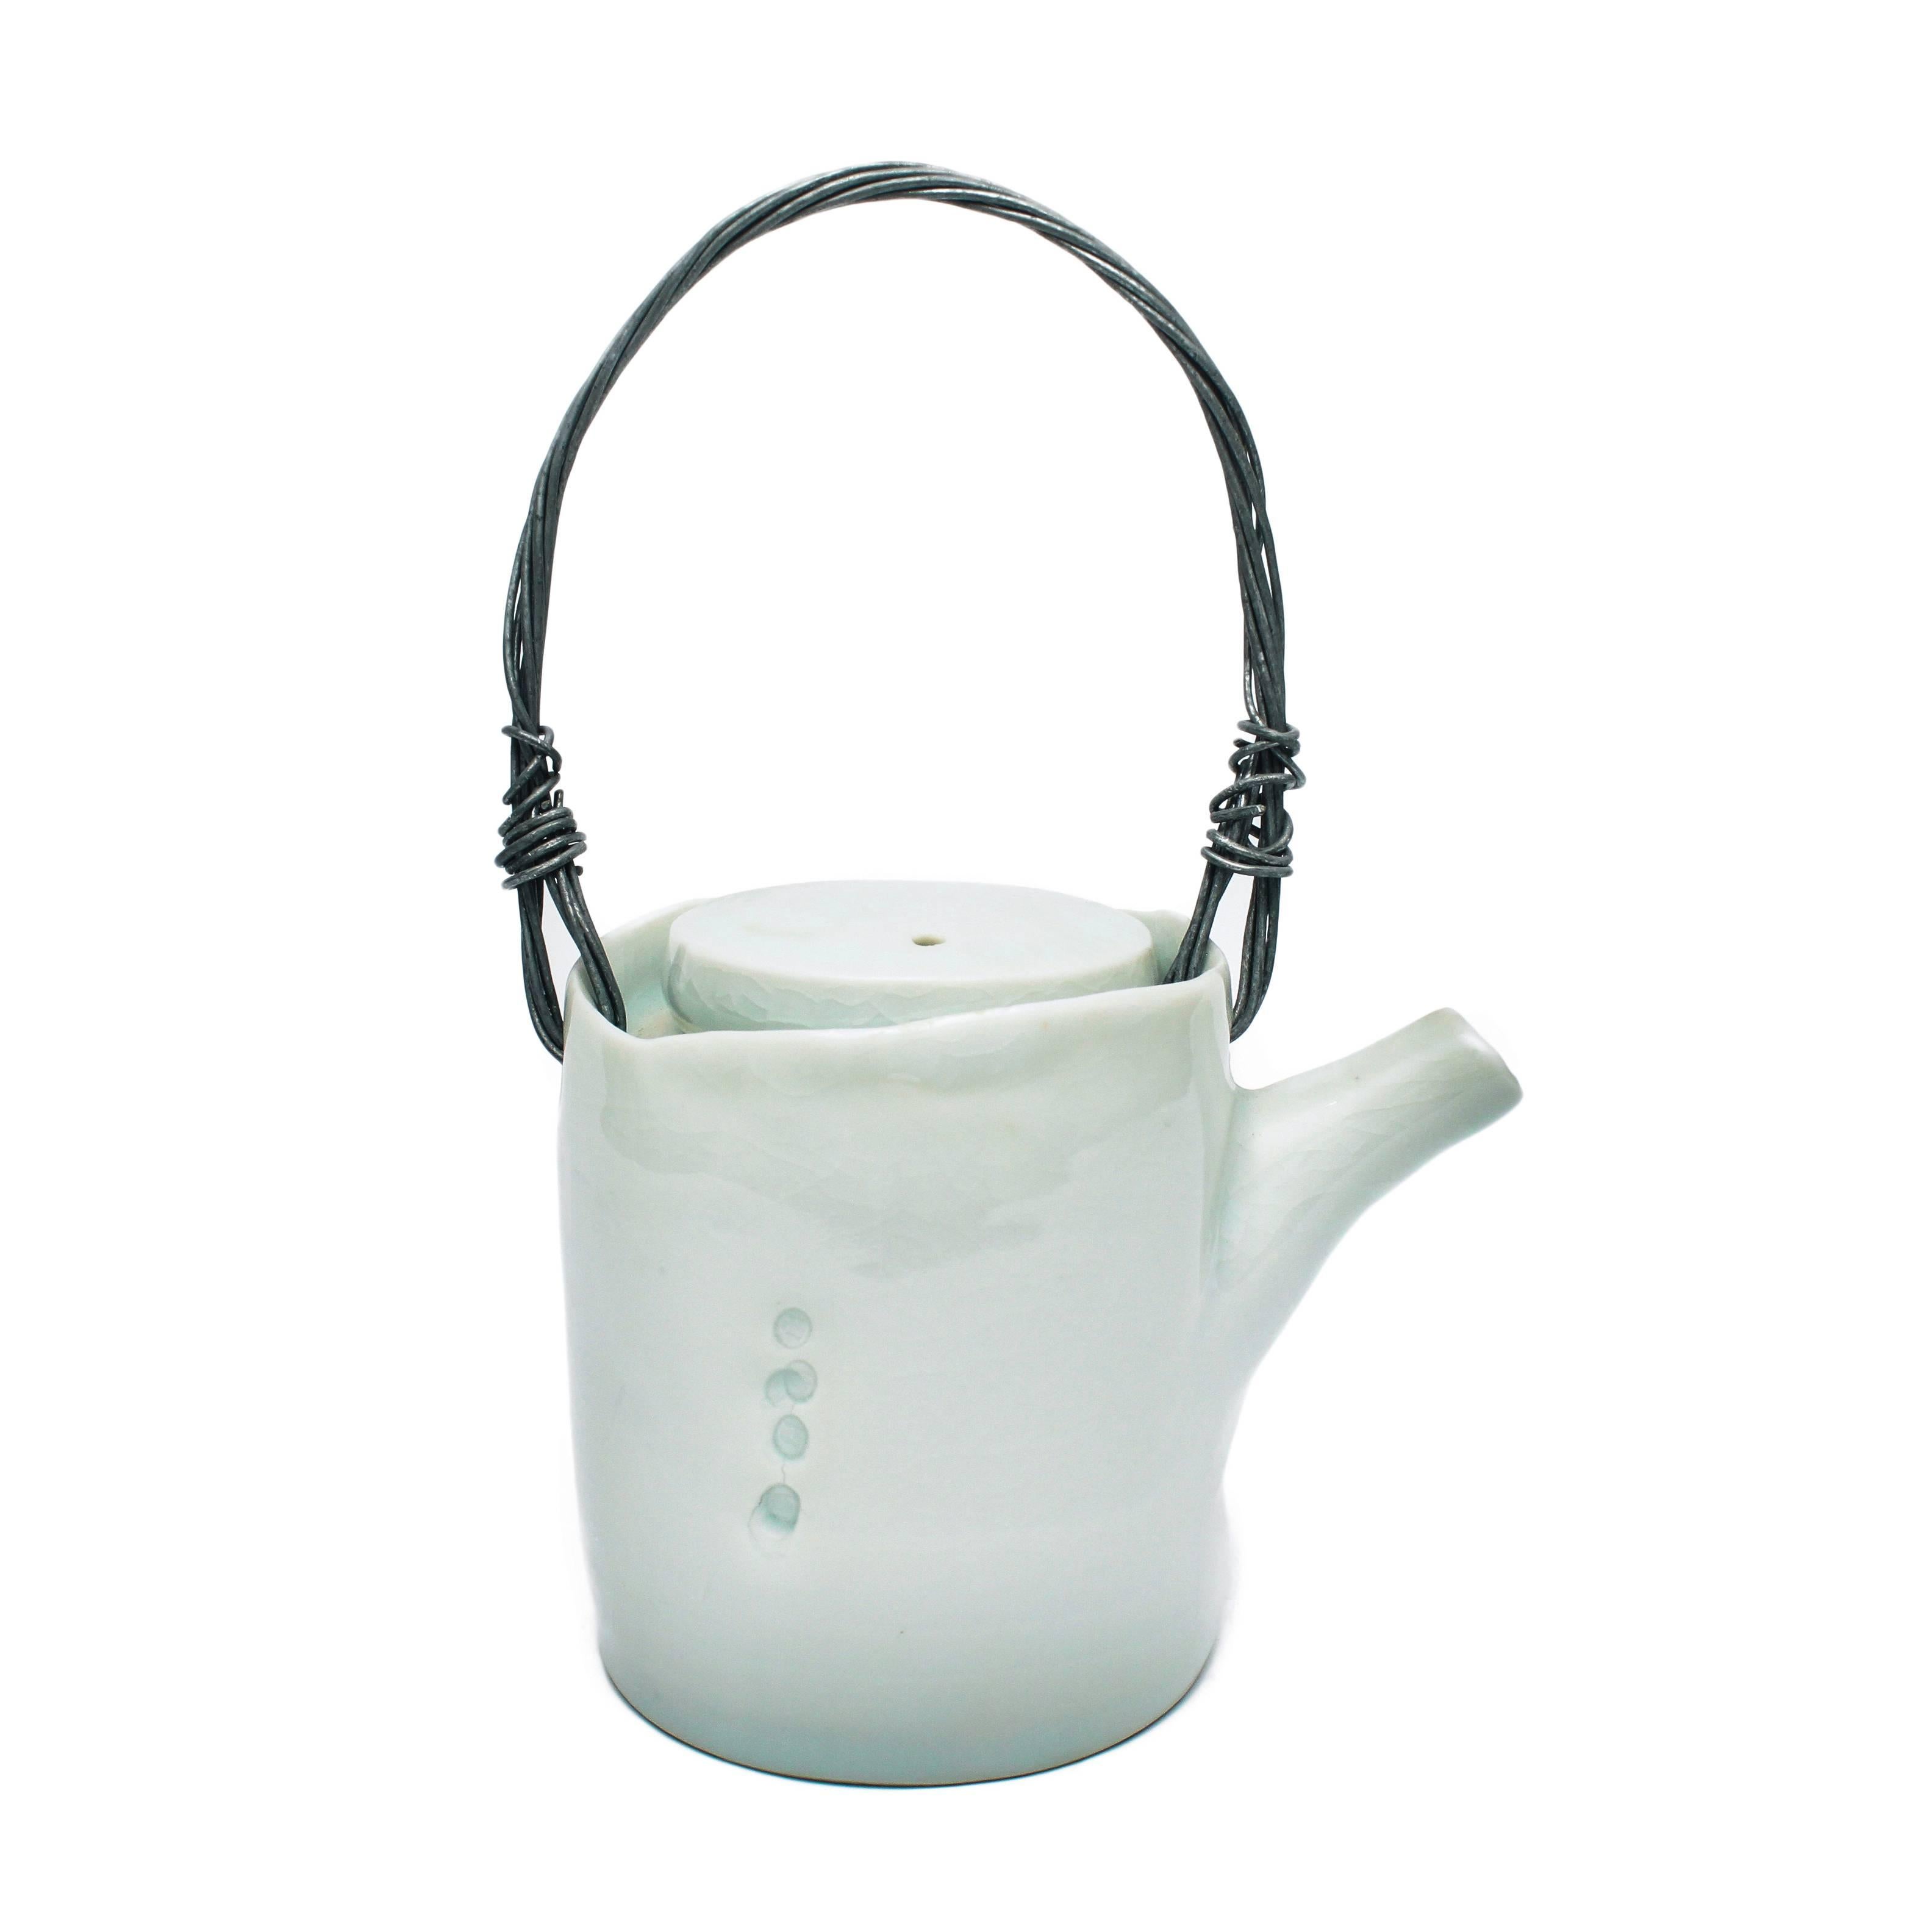 Teapot - Art by Edmund De Waal